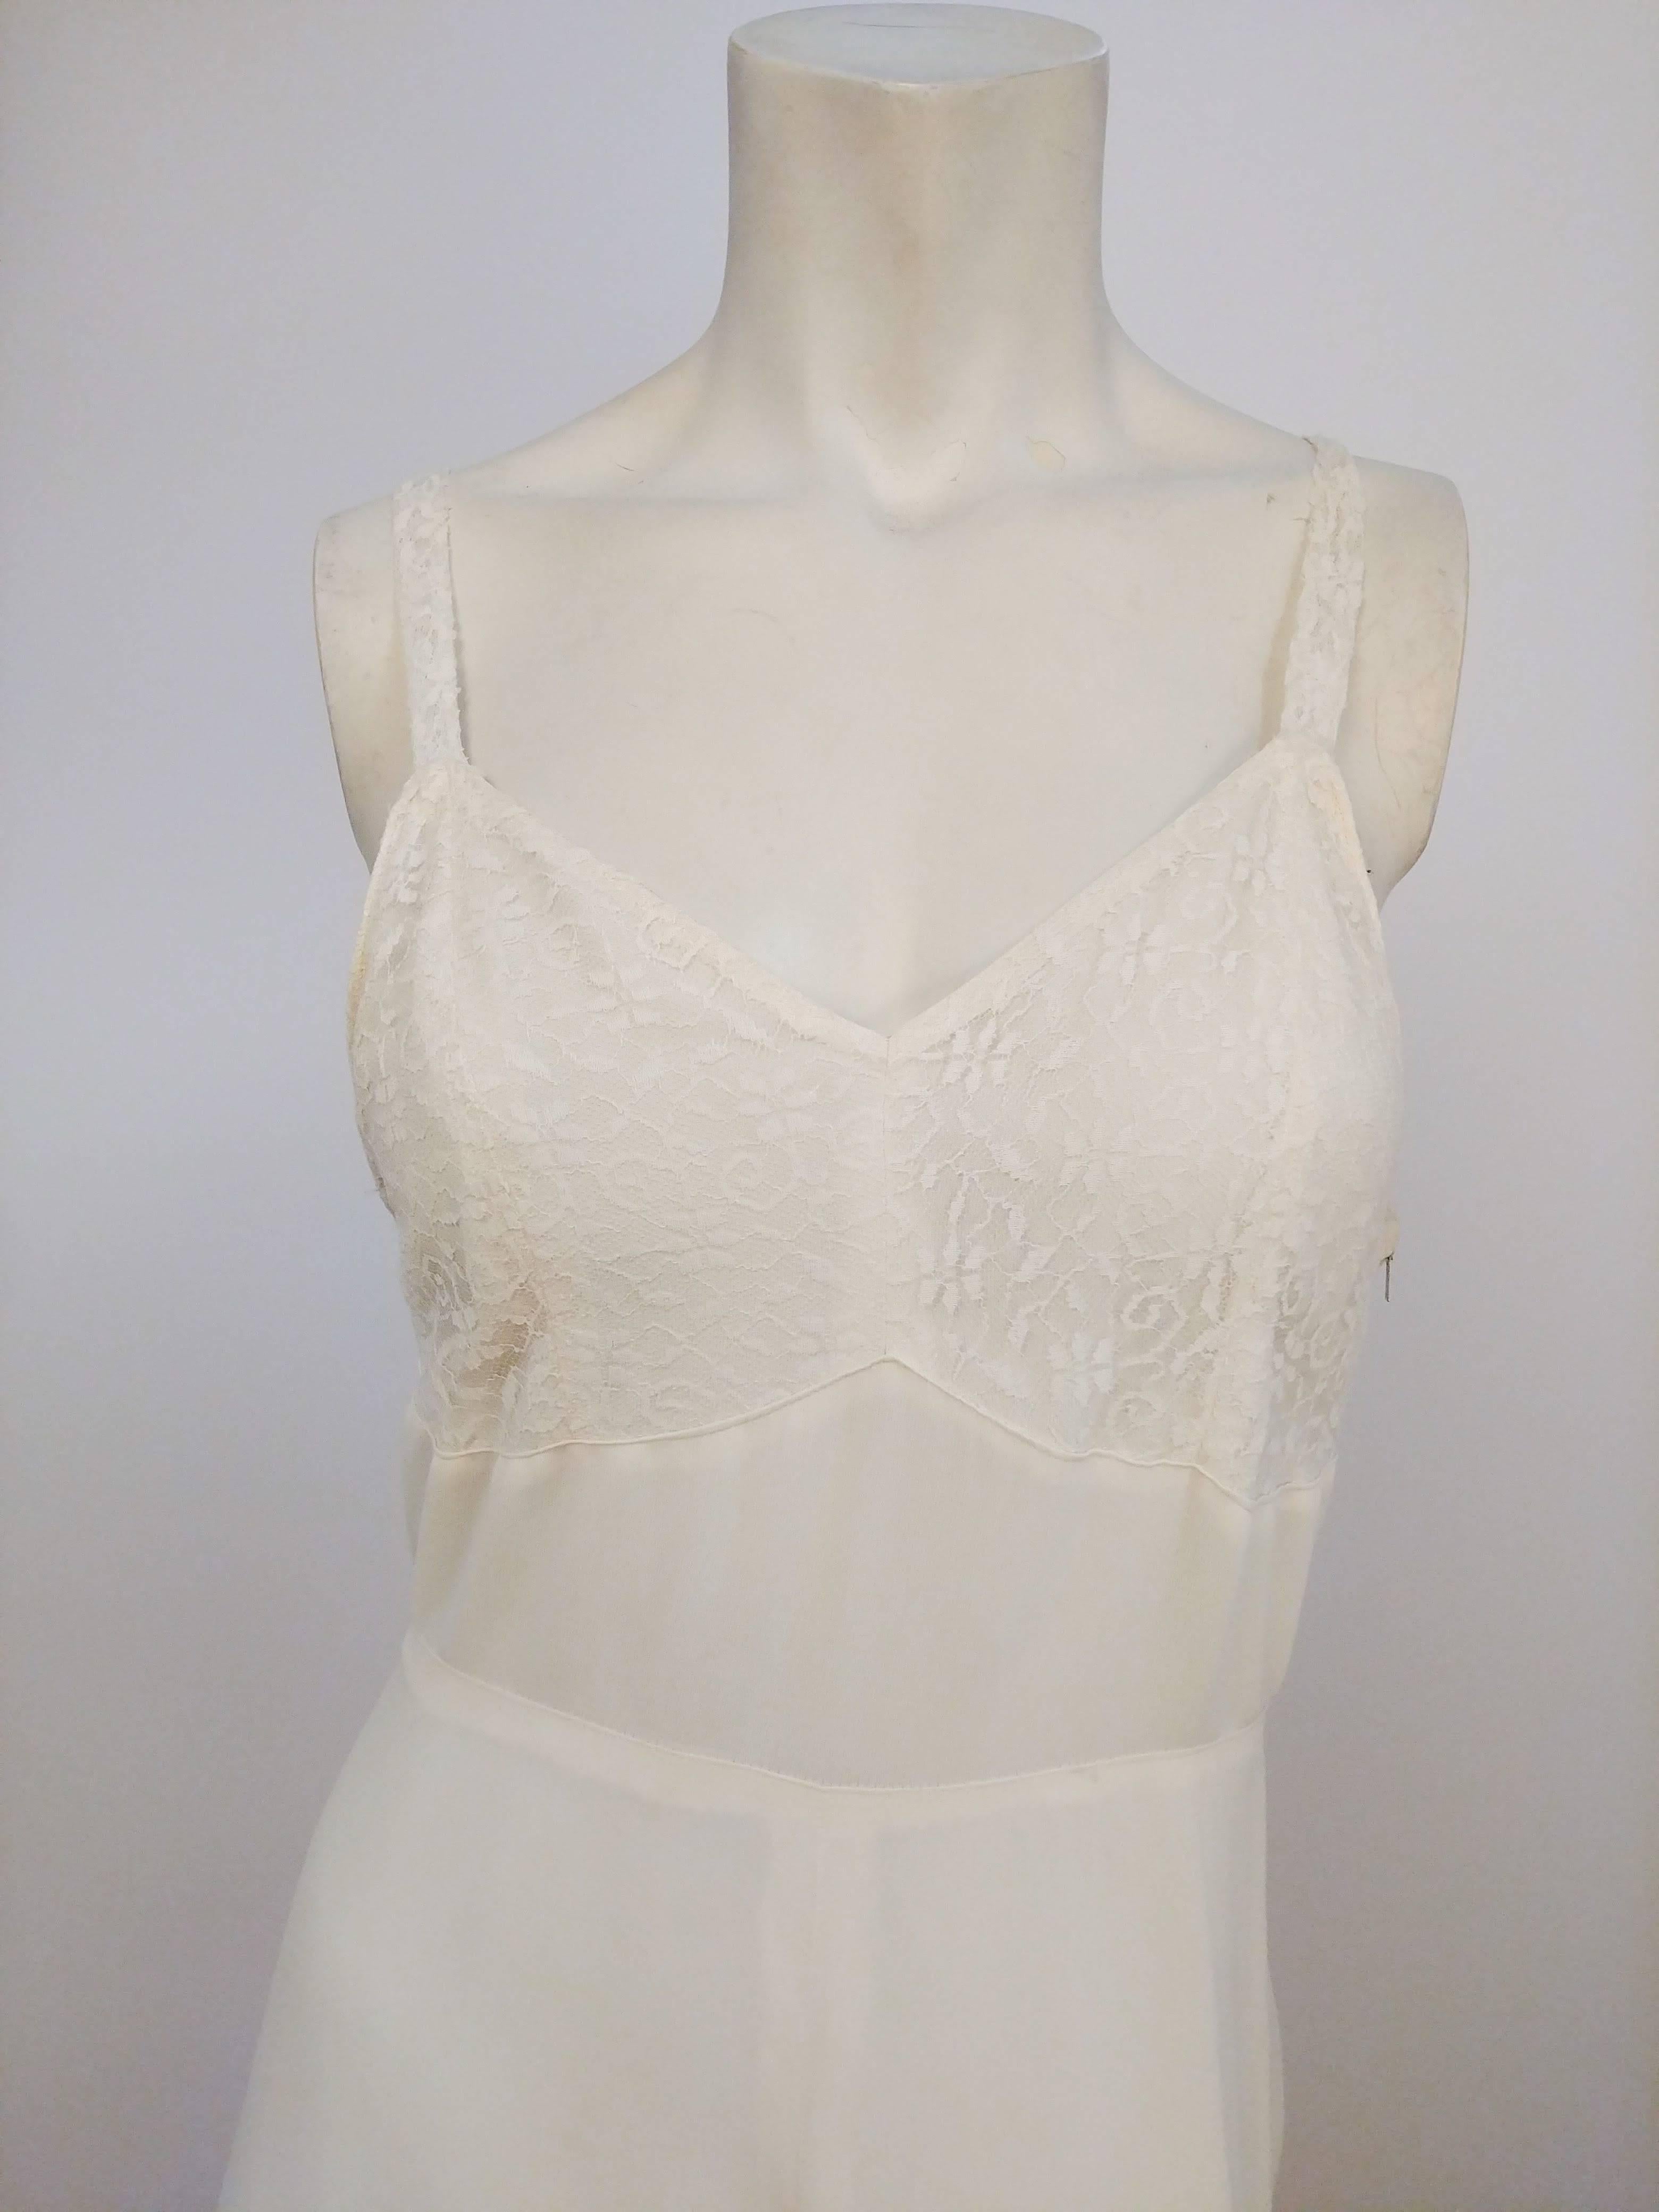 Robe à traîne en dentelle blanche, années 1930. Superposition de dentelle au niveau du buste, de la couture naturelle de la taille et de la jupe pleine longueur. 